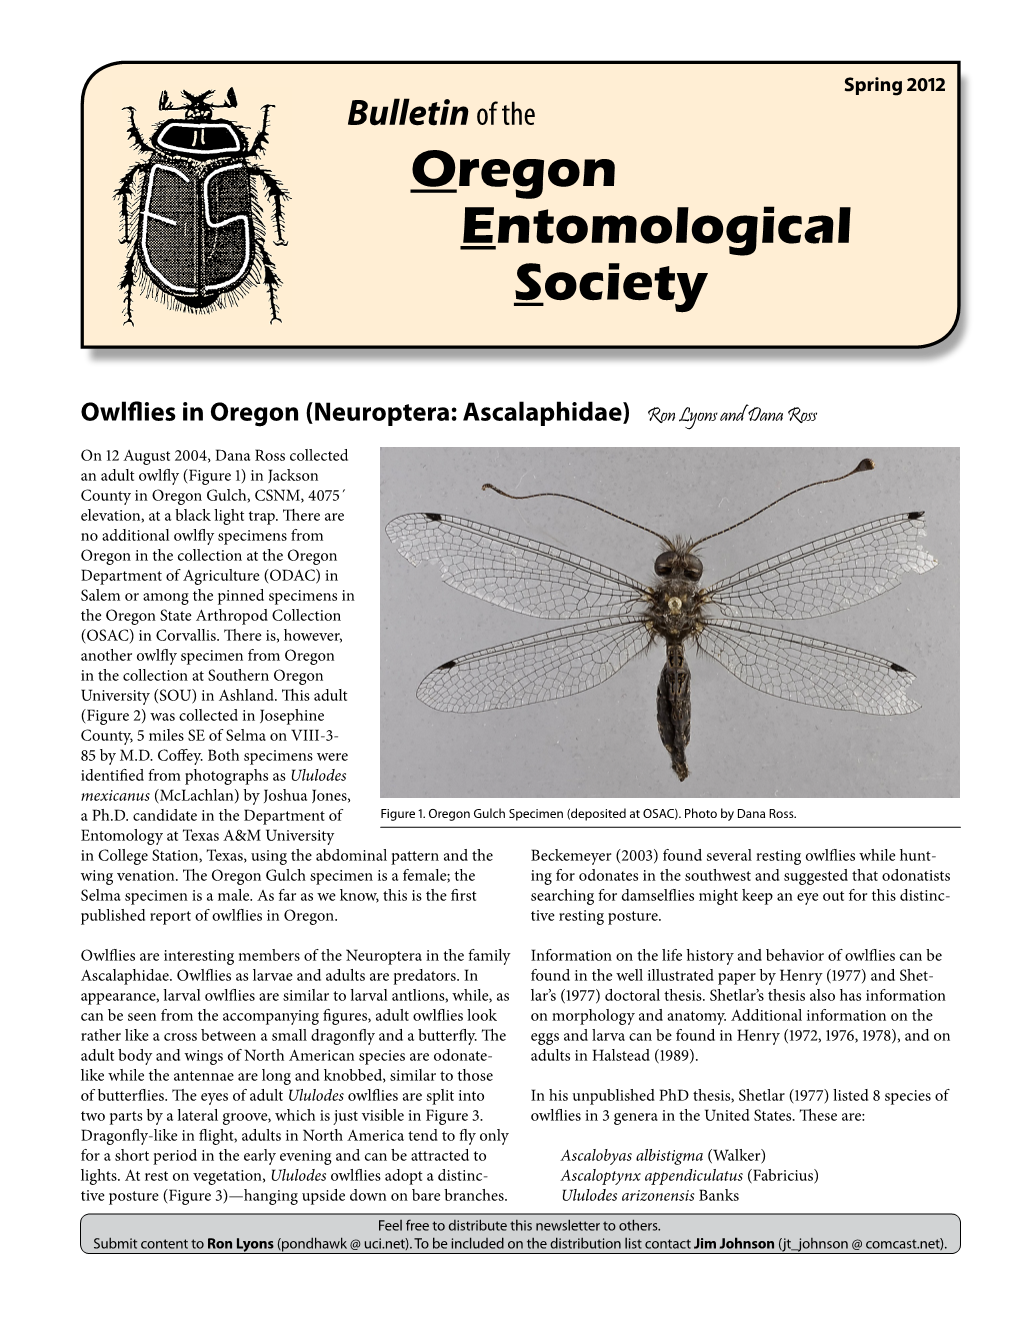 Spring 2012 Bulletin of the Oregon Entomological Society